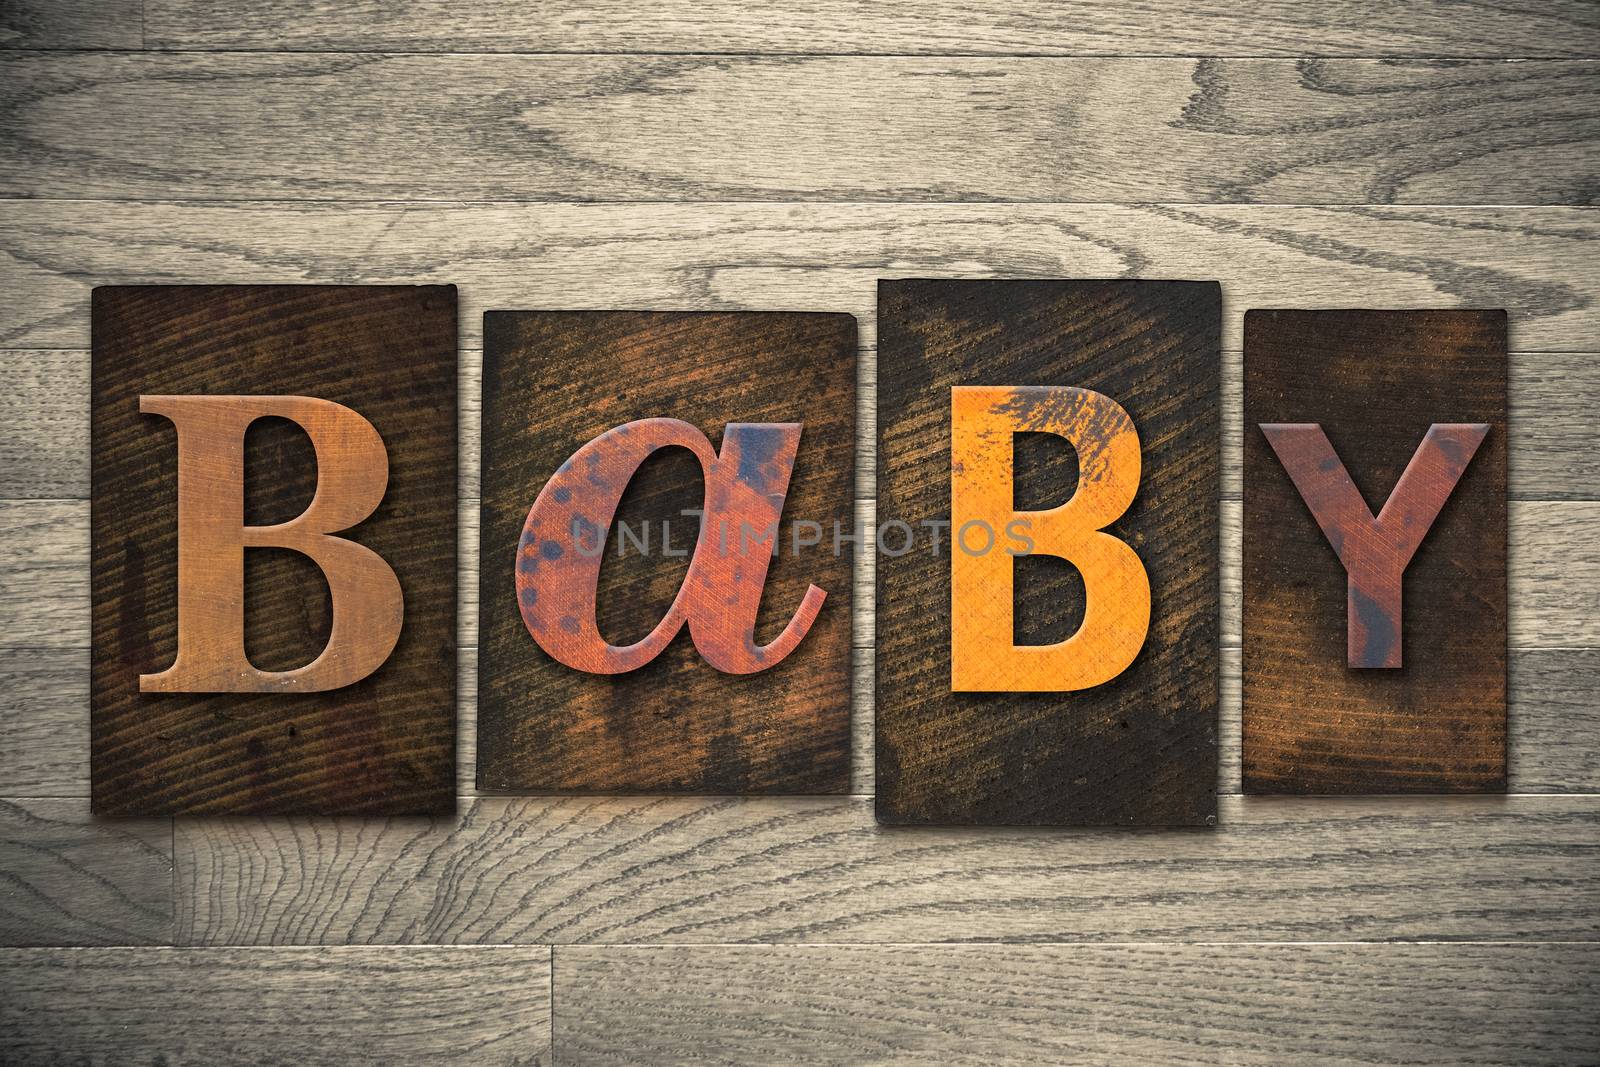 The word "BABY" written in wooden letterpress type.